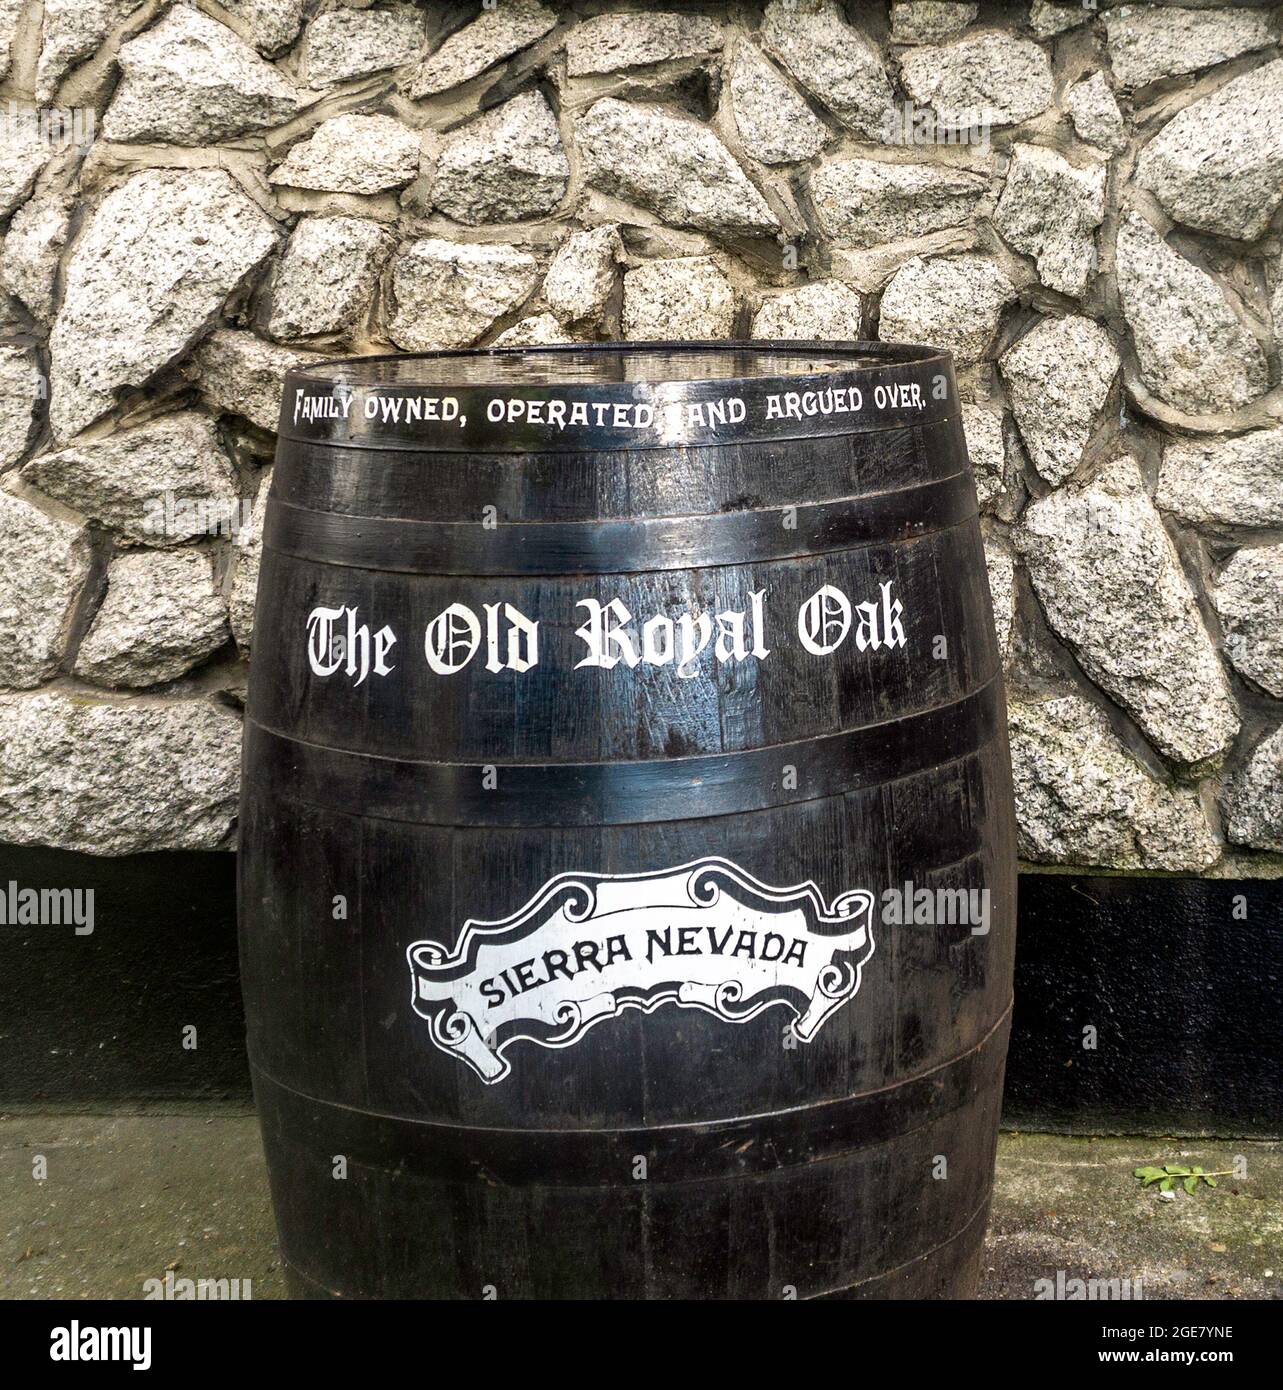 Un vieux baril de whisky devant le pub Old Royal Oak à Kilmainham, Dublin, Irlande, portant la légende, «propriété familiale, opéré et argumenté». Banque D'Images